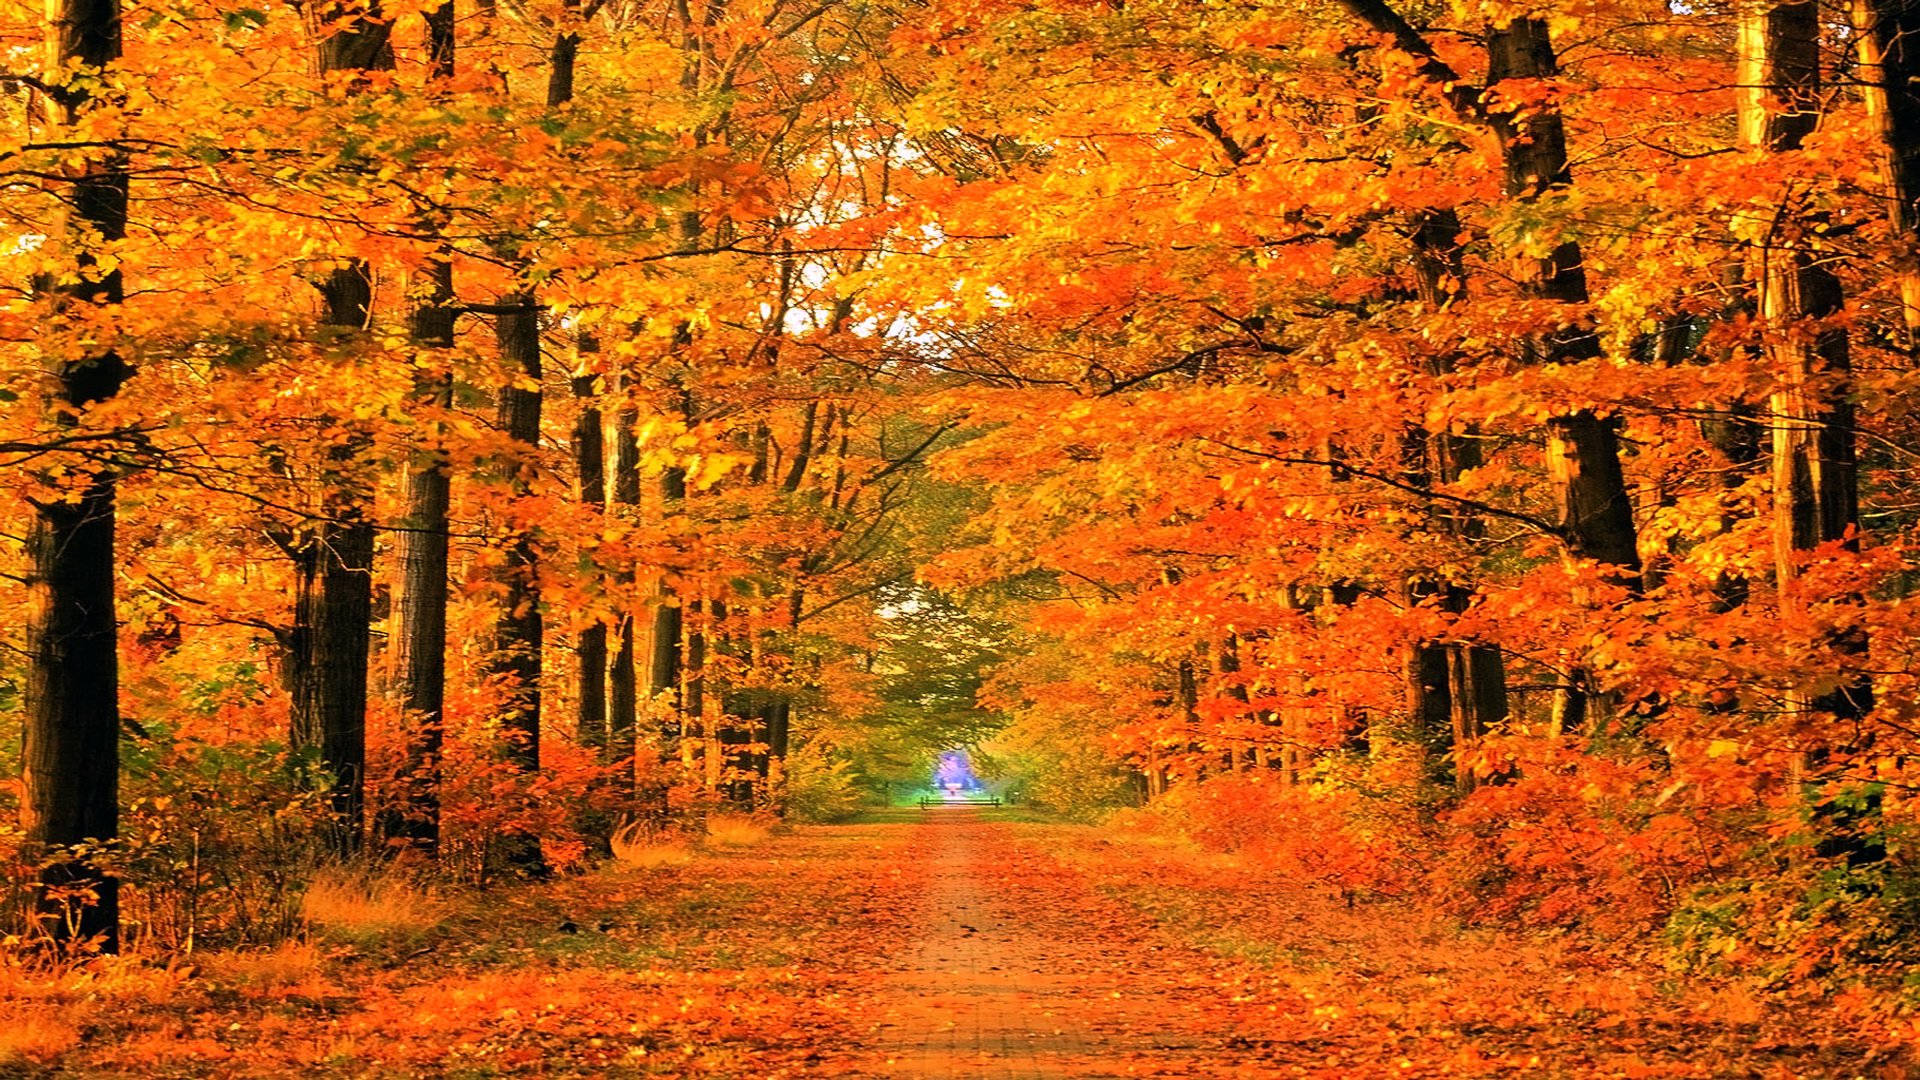 Enchanting Fall Season Wallpaper